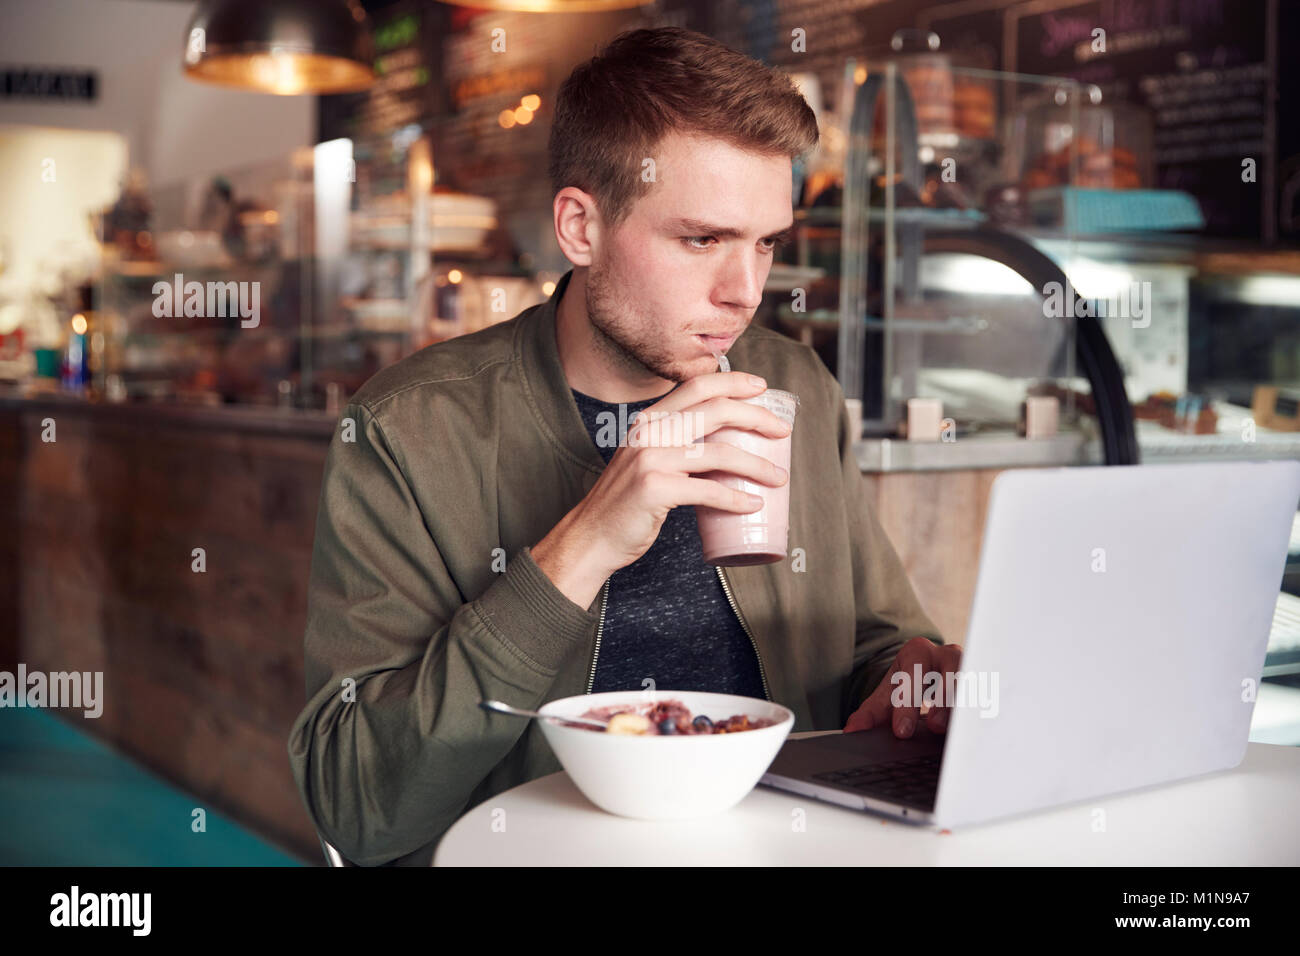 Young Man Using Laptop In Cafe tout en prenant un petit déjeuner Banque D'Images